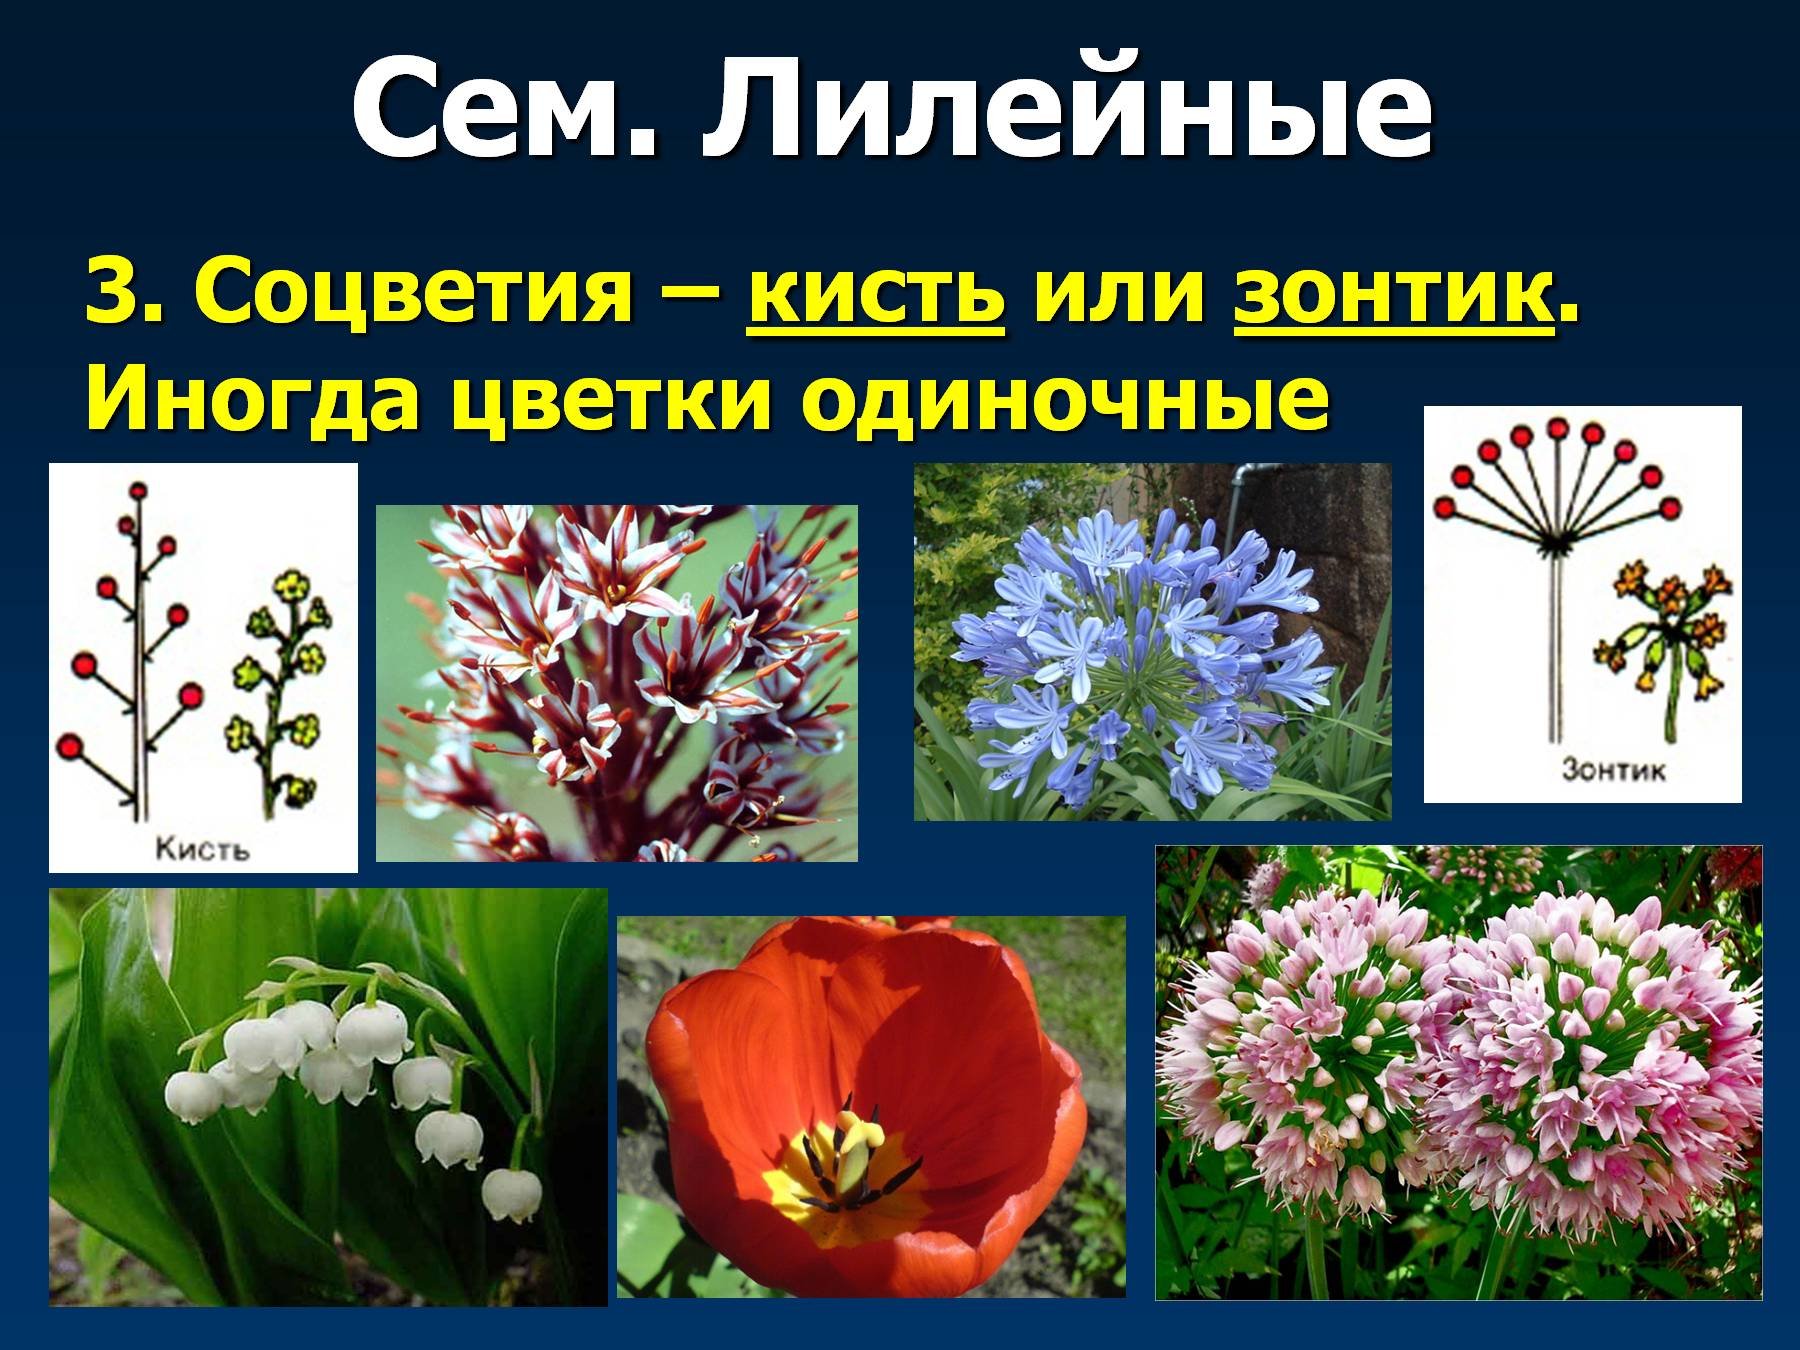 Характерные цветы для покрытосеменных. Соцветие лилейных растений. Соцветие цветка лилейных. Семейство Лилейные соцветие. Соцветия растений семейства Лилейные.